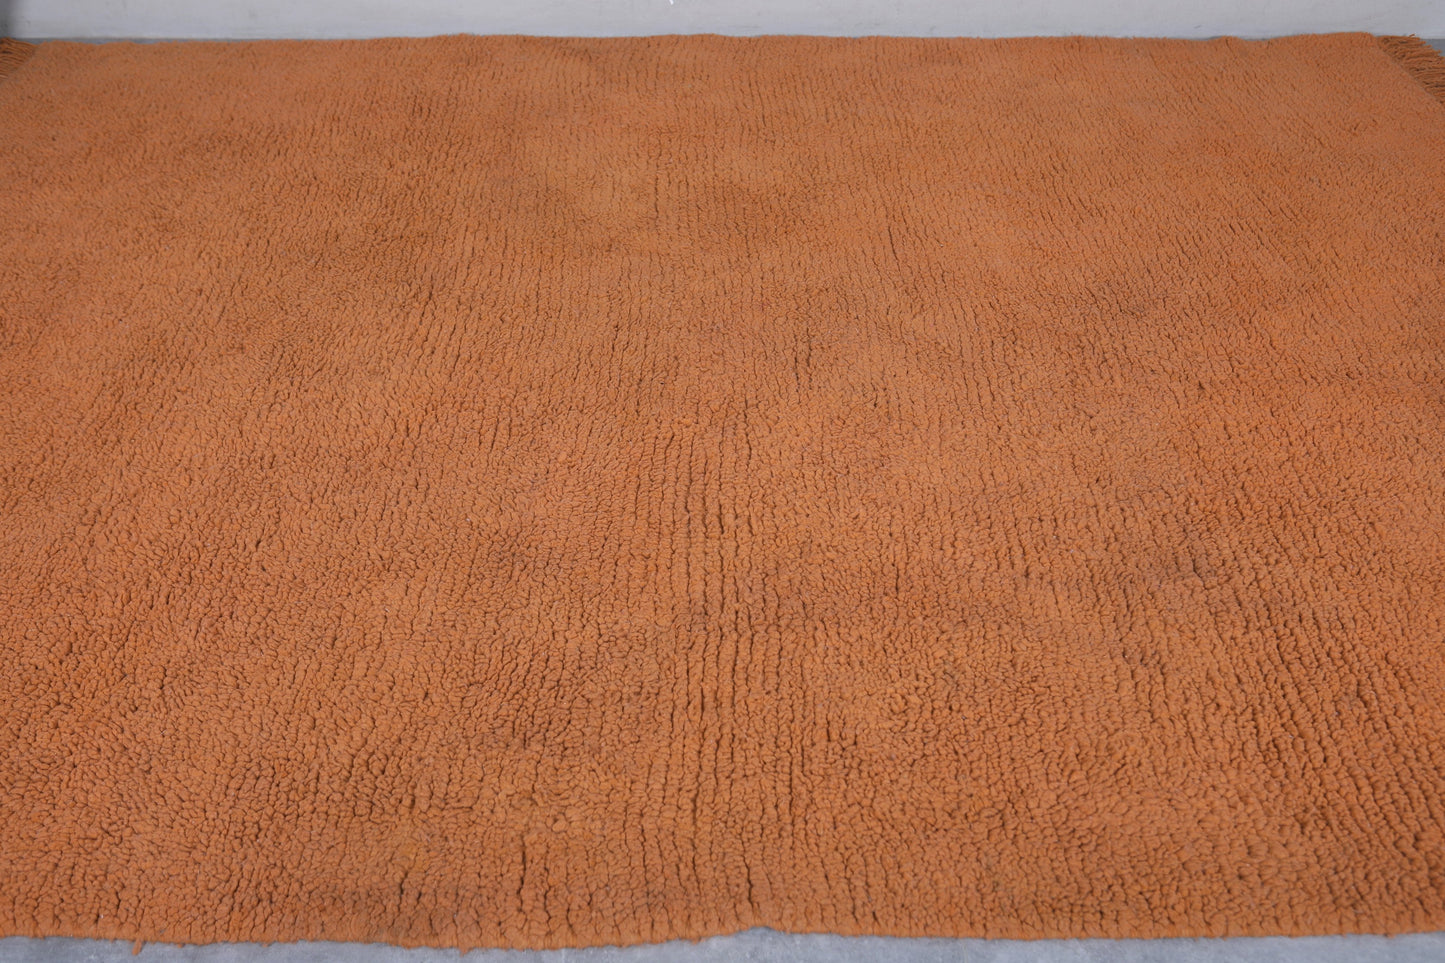 Moroccan rug 8.8 X 10.1 Feet